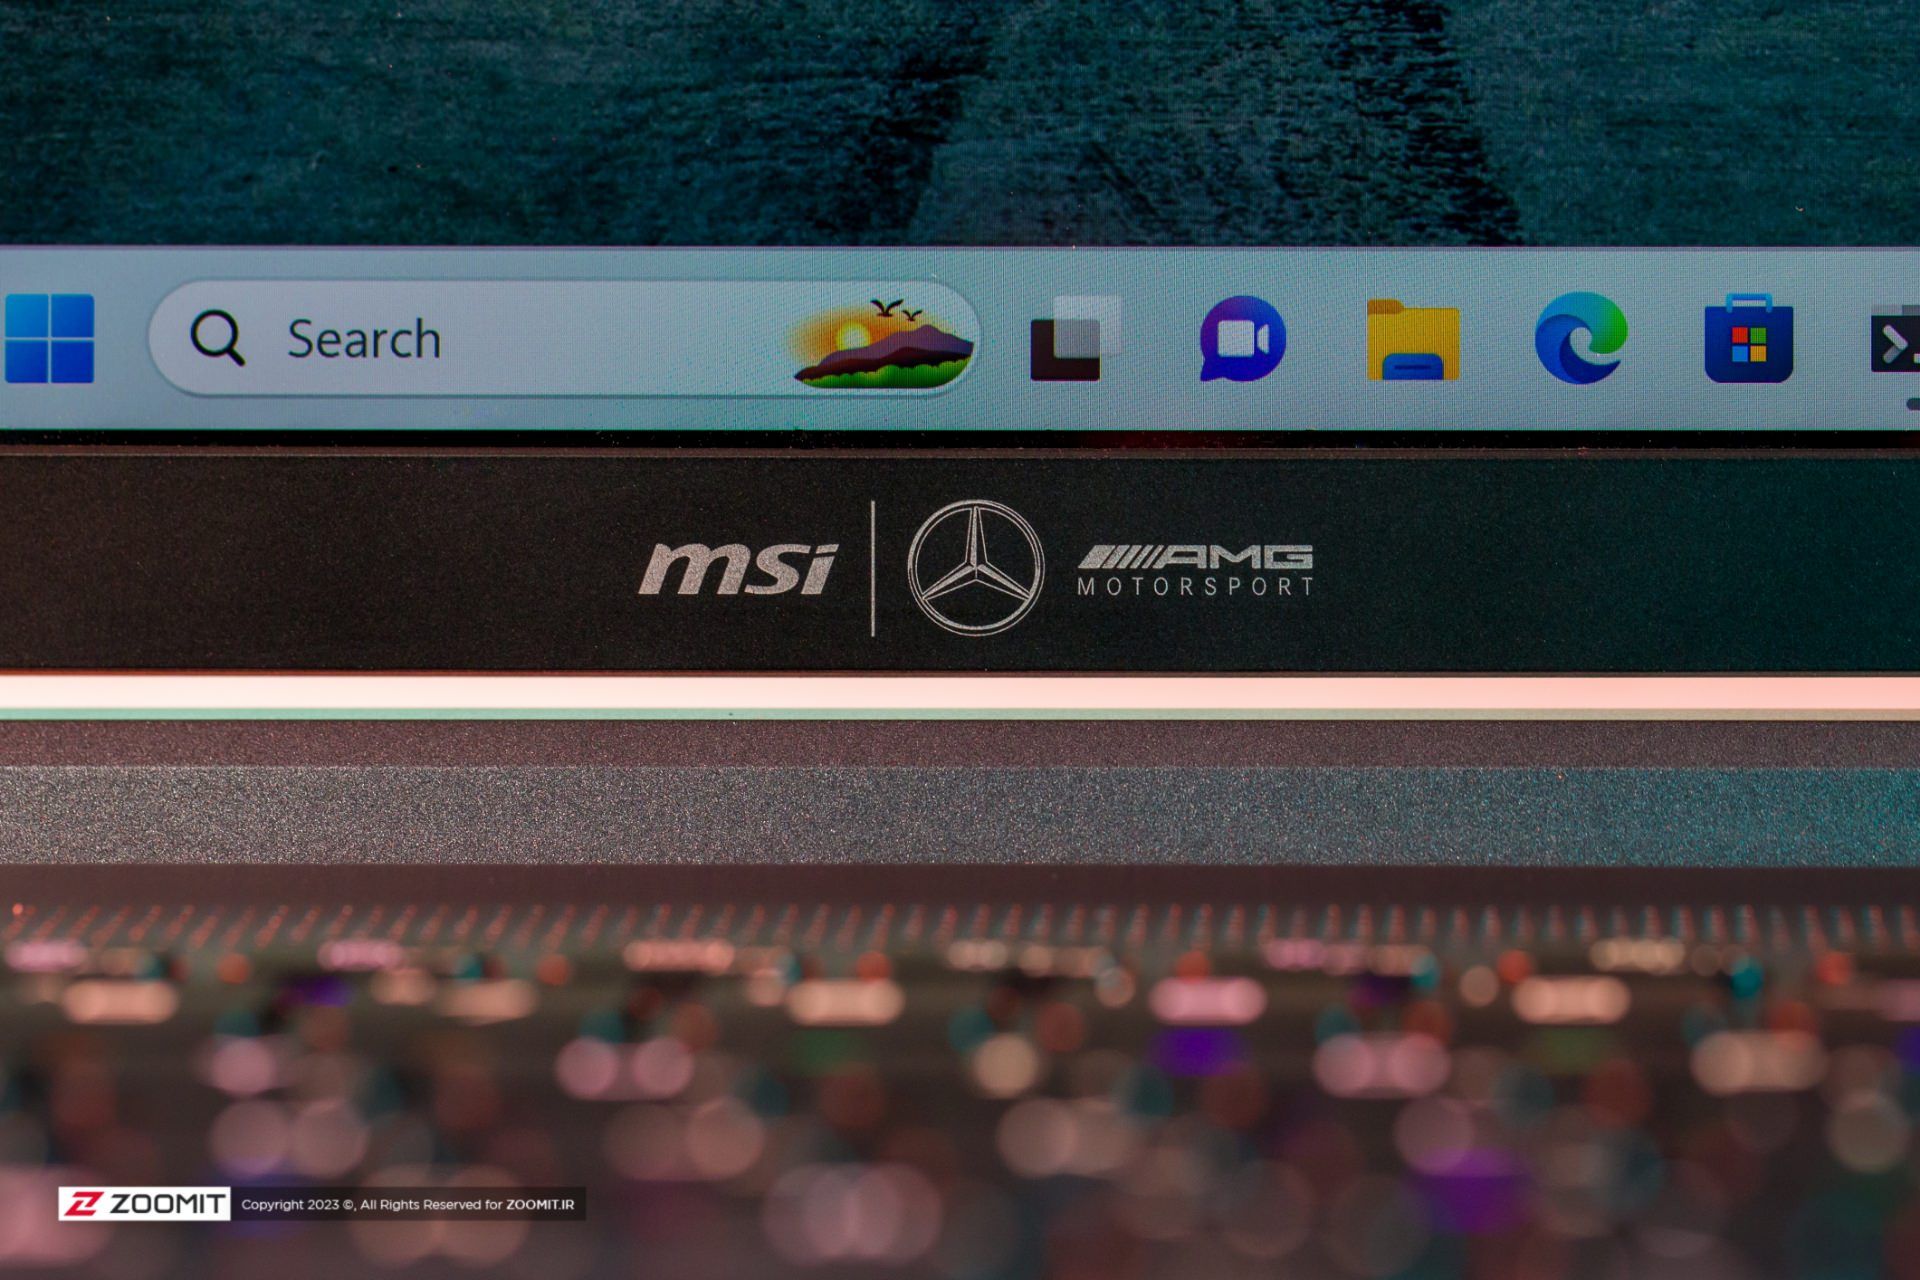 لوگوی مرسدس و ام اس آی روی حاشیه پایین صفحه نمایش Stealth 16 AMG